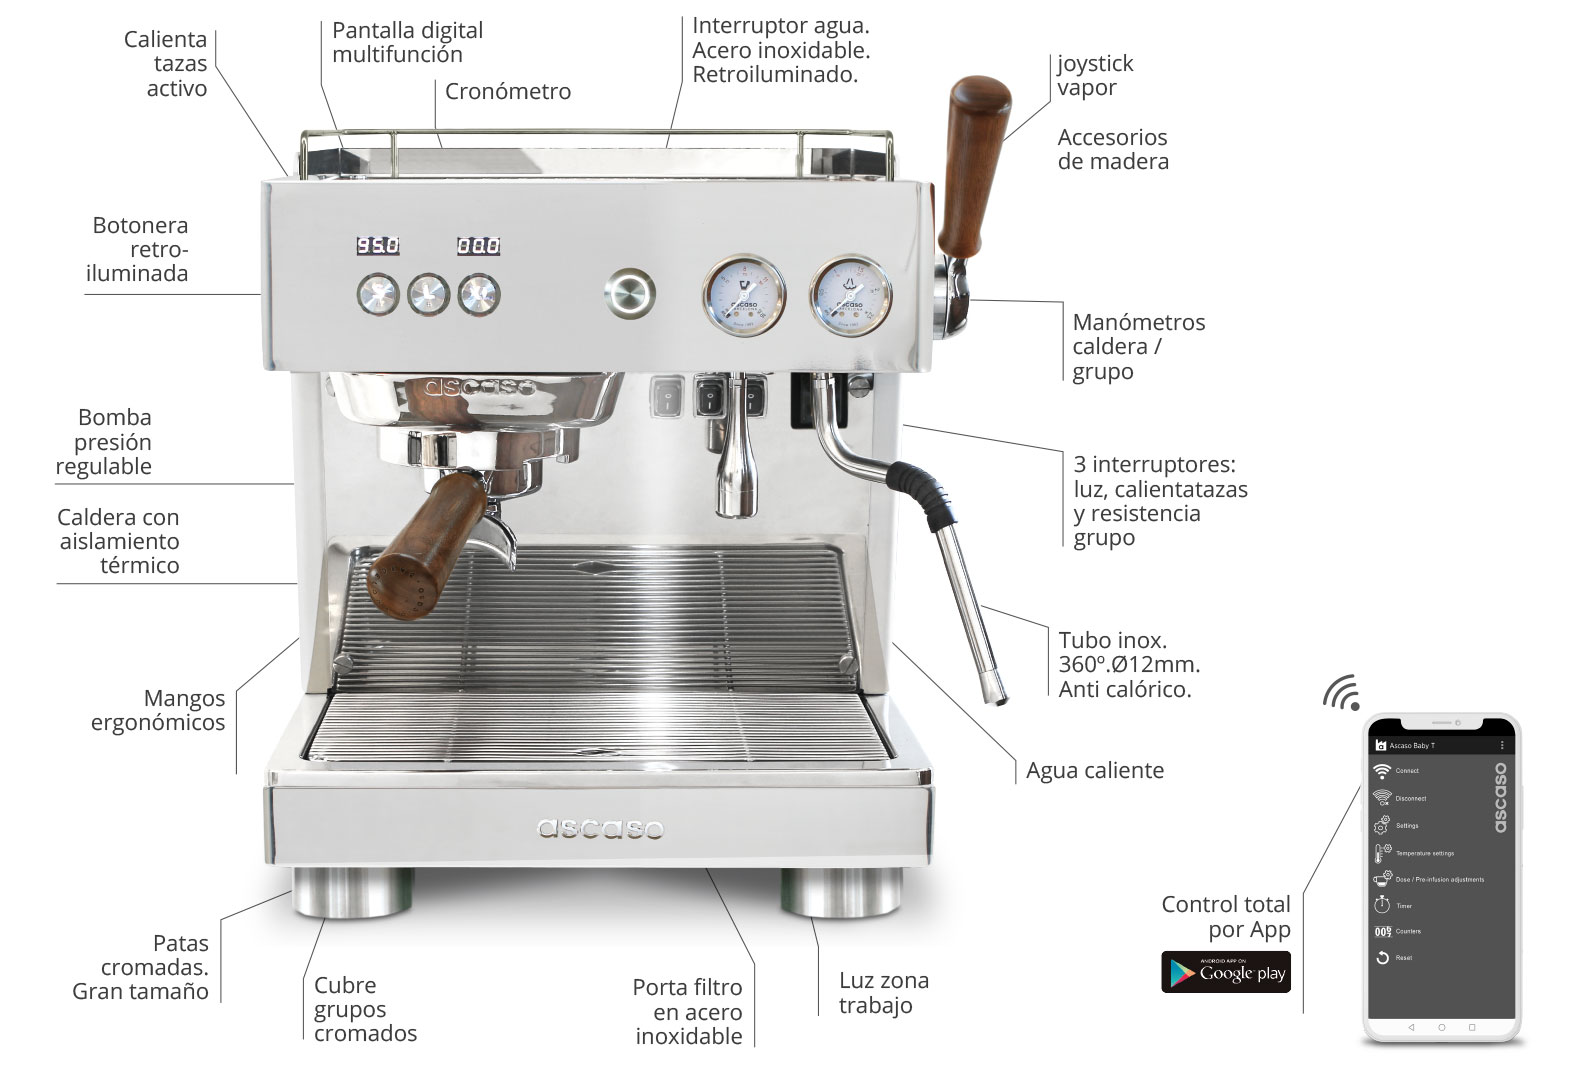 Cafetera combinada - BAR - ASCASO FACTORY - espresso / profesional / de  oficina